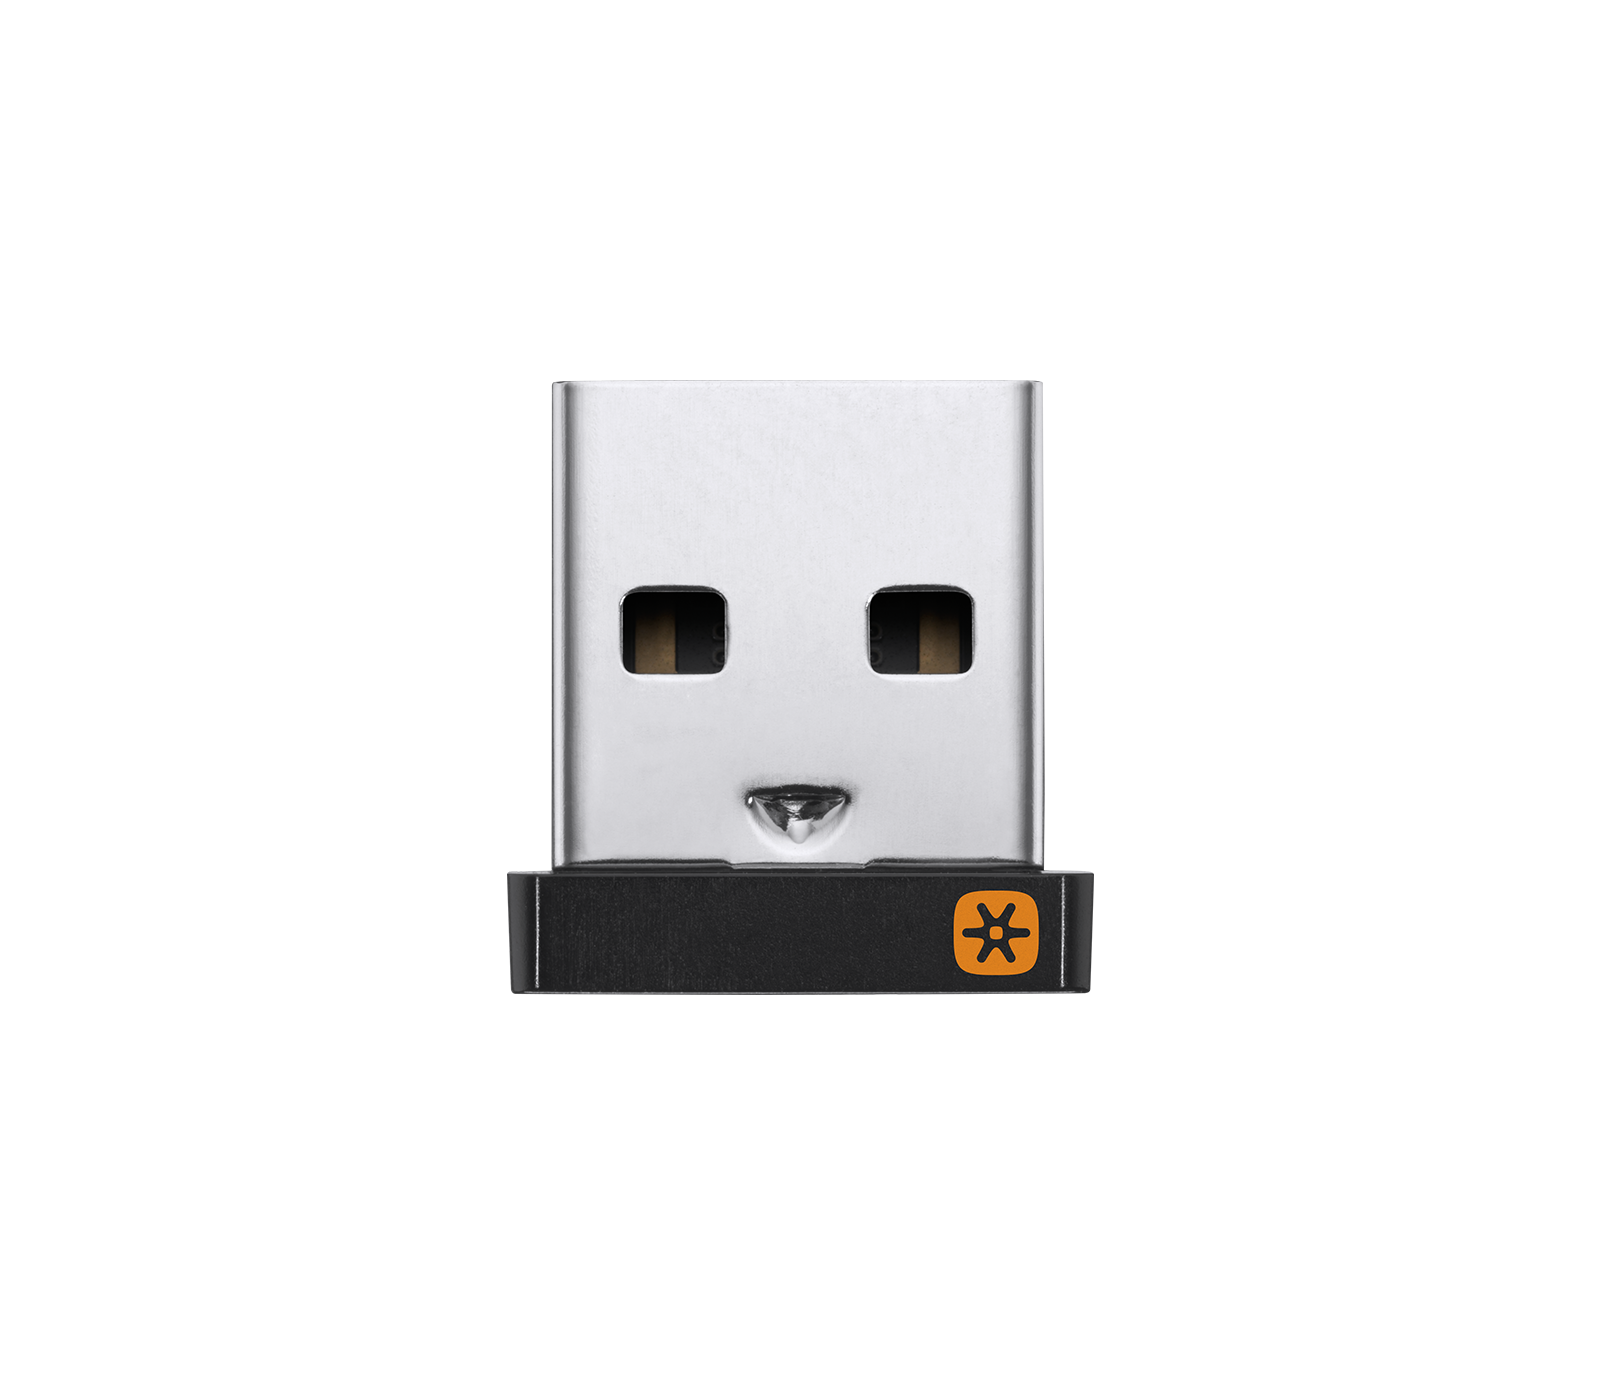 Bolt Adapter USB Receiver Adapter CU0021 956-000011 For Logi Logitech  Wireless